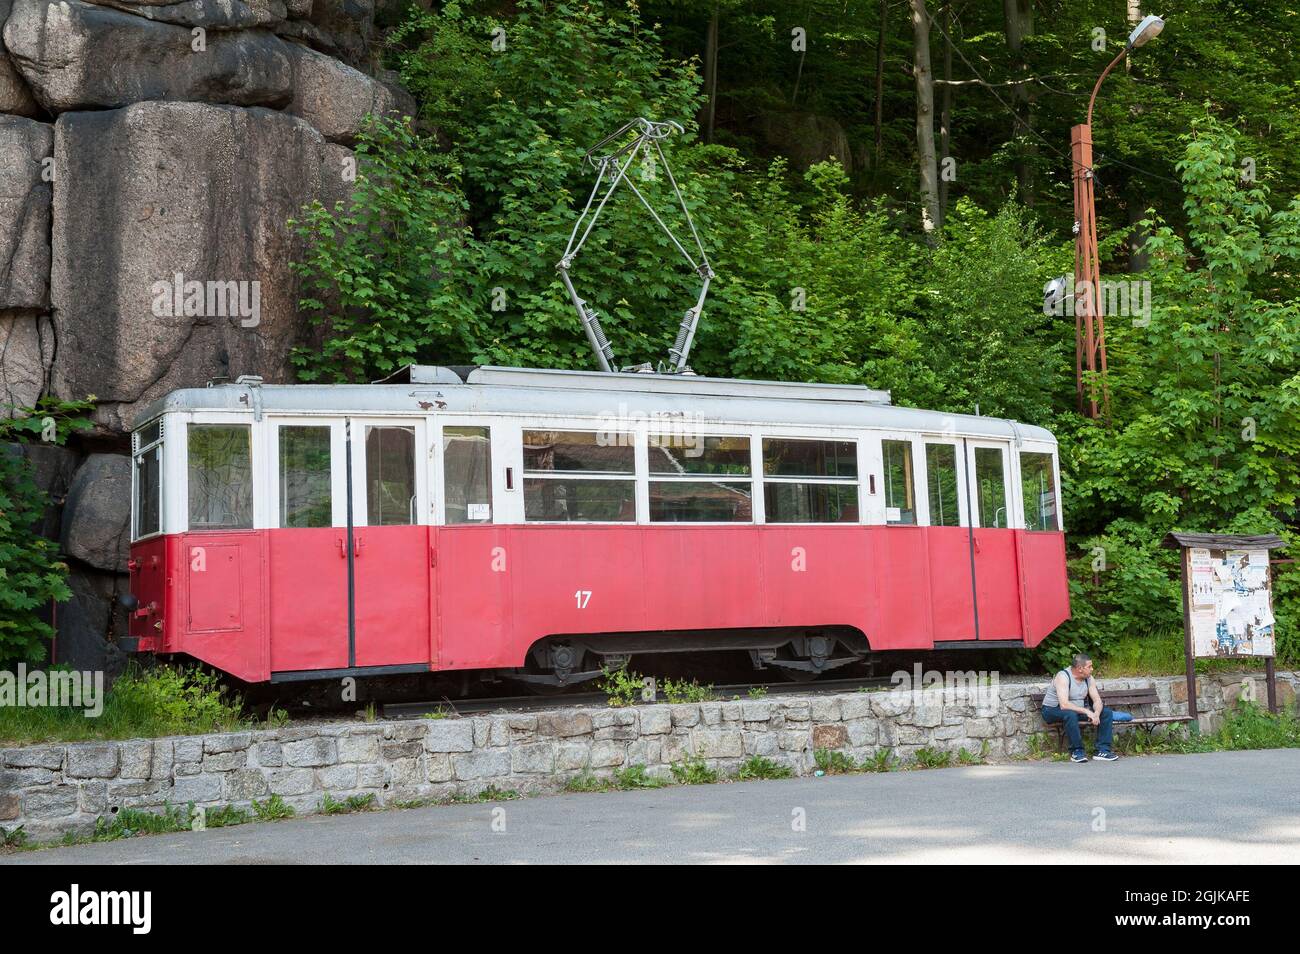 Bus stop in Karkonosze Mountains, Poland Stock Photo